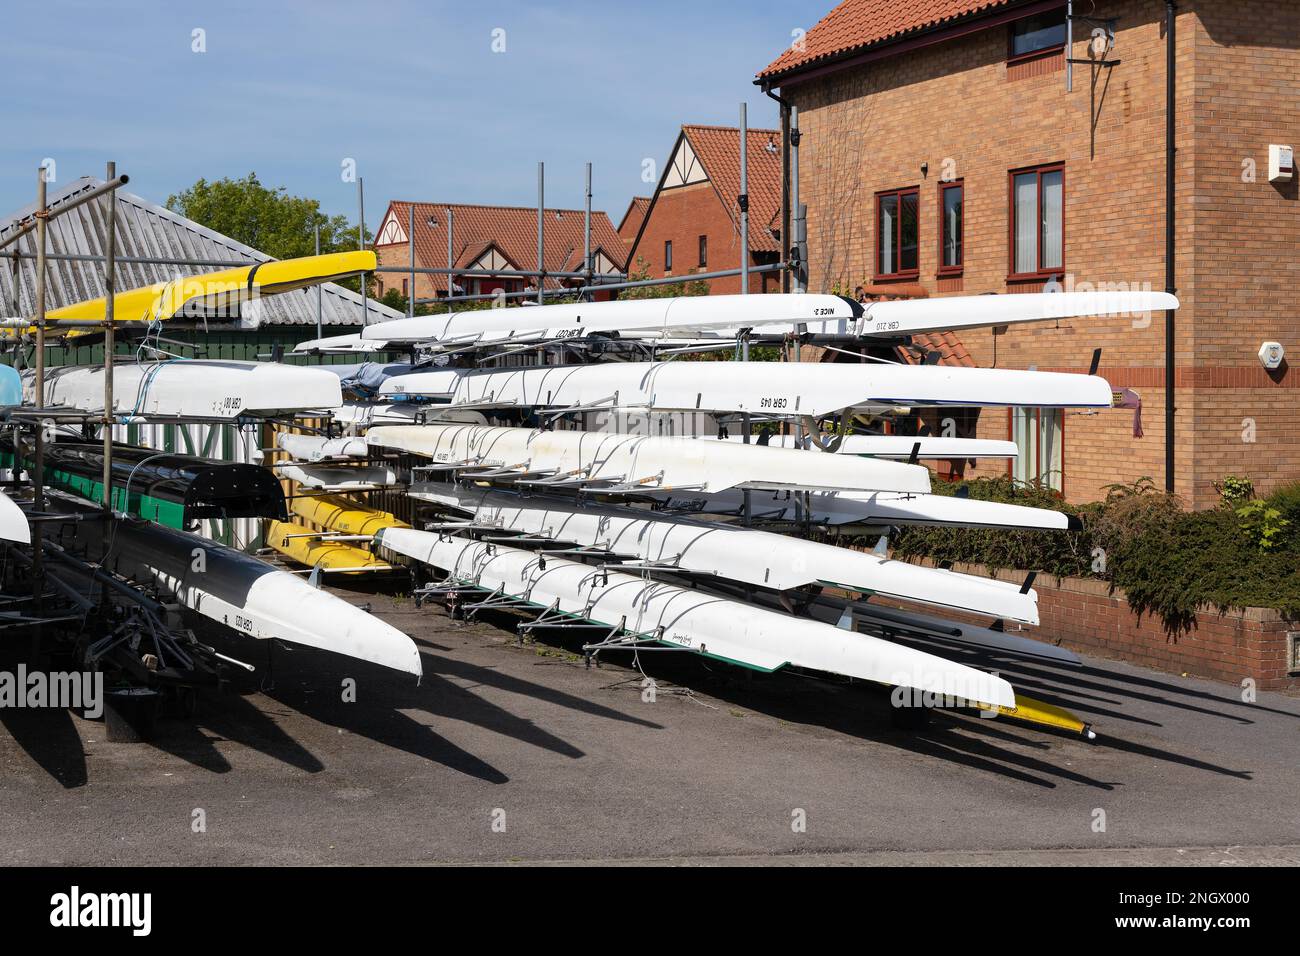 BRISTOL, UK - MAI 14 : am 14. Mai 2019 in Bristol gab es viele Schwalbenboote am Fluss Avon Stockfoto